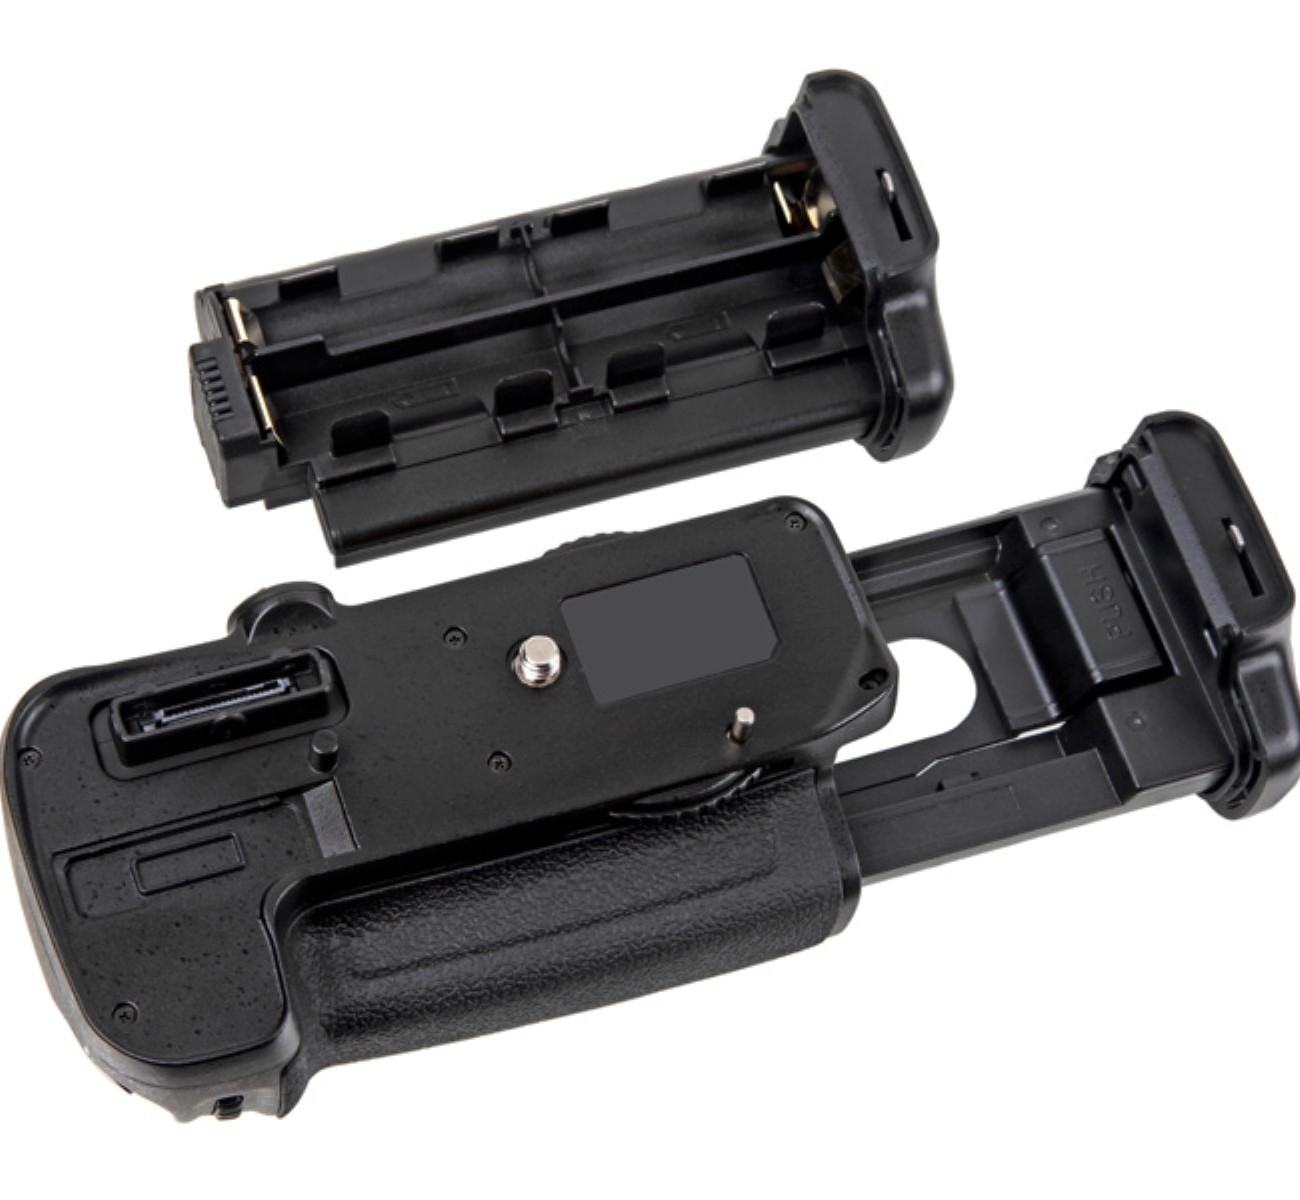 EN-EL15B Set, ersetzt D7100 D7200 Batteriegriff + Set Schwarz AYEX Nikon MB-D15 Akku, Batteriegriff 1x für